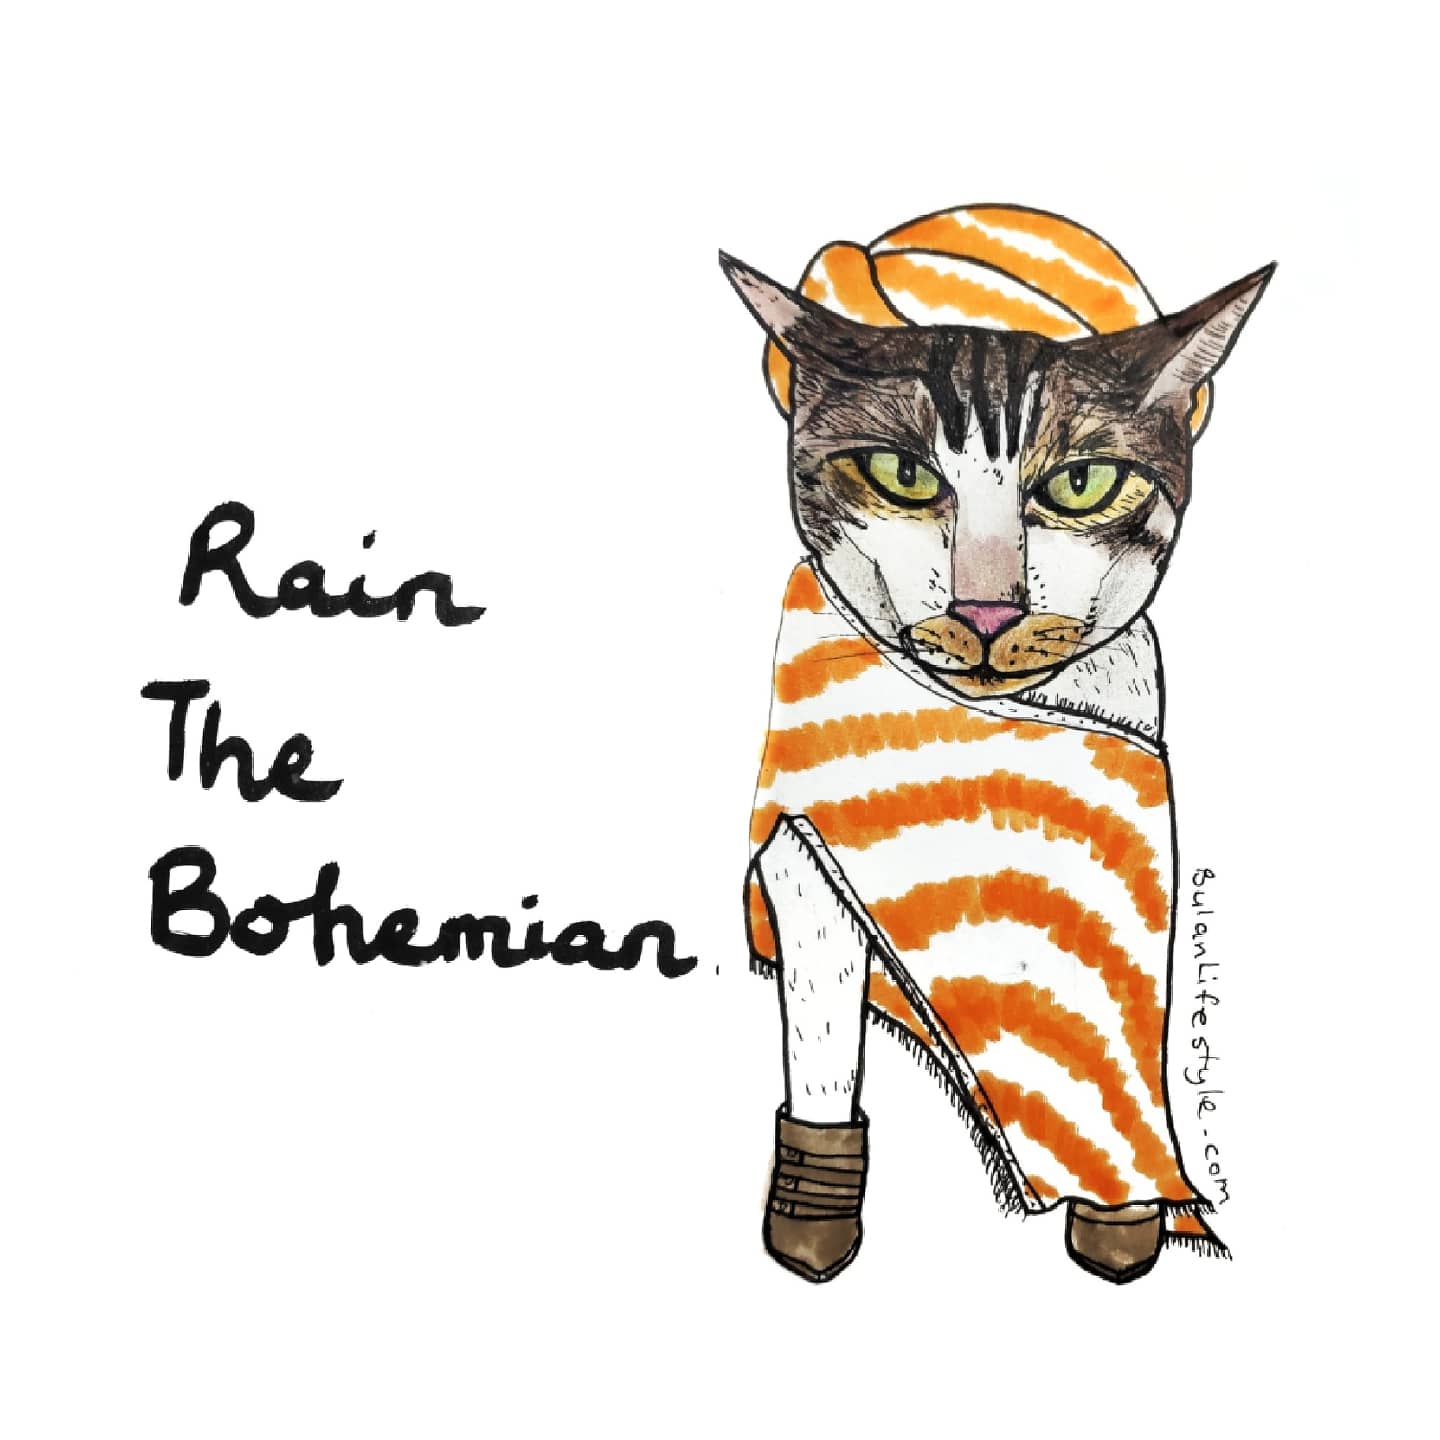 Rain the Bohemian pet portrait